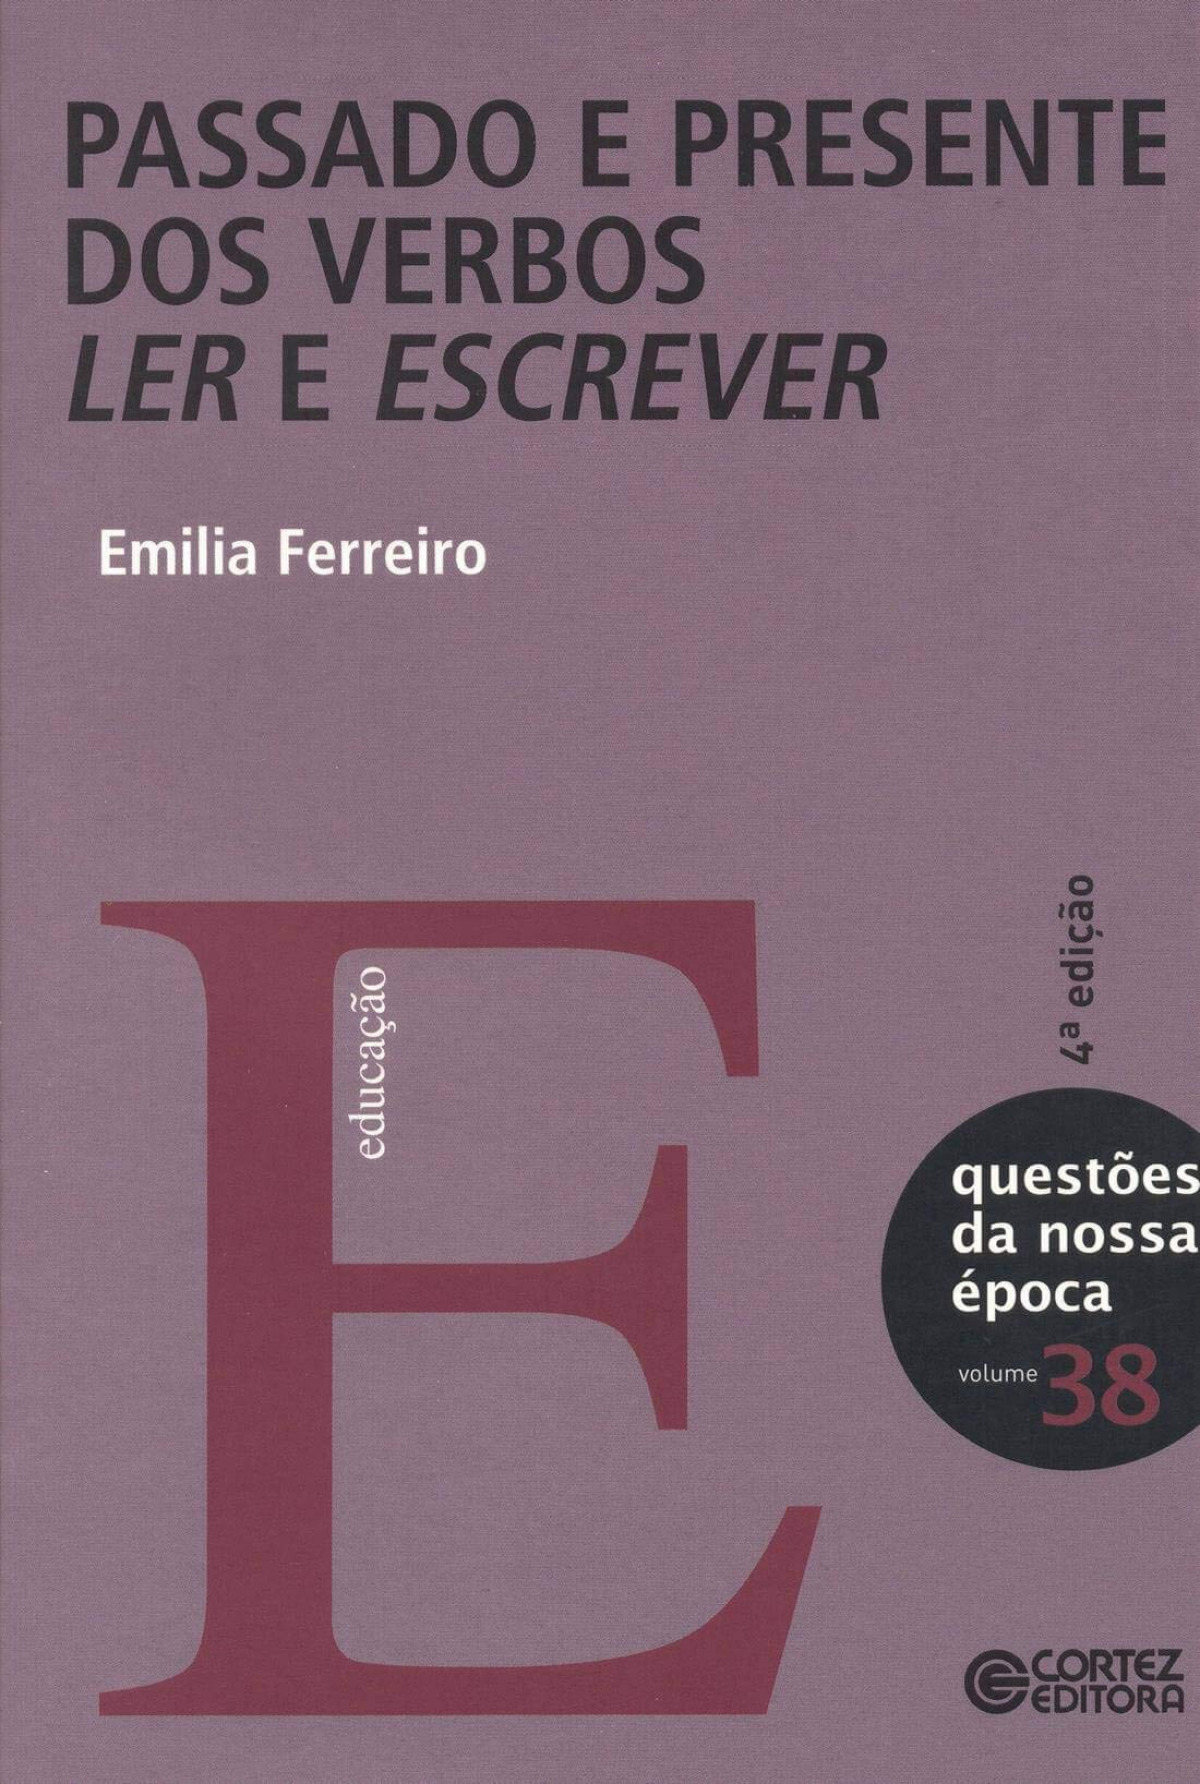 Passado e presente dos verbos ler e escrever - Emilia Ferreiro